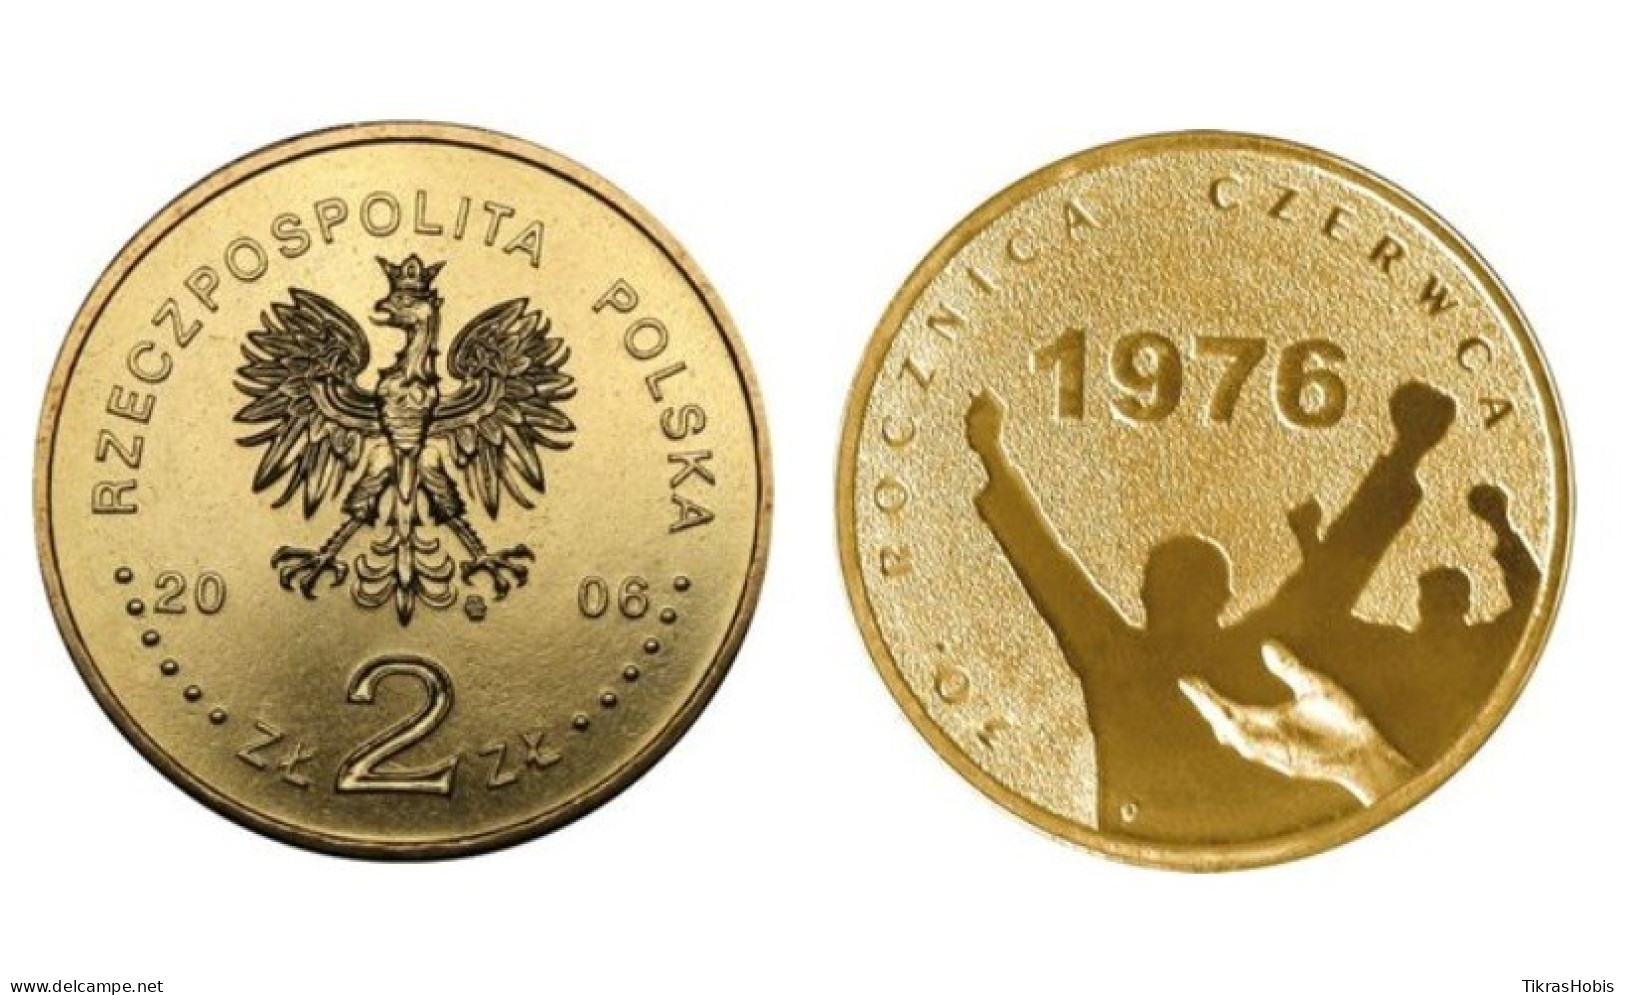 Poland 2 Zlotys, 2006 1976 June 30th Anniversary Y571 - Polen